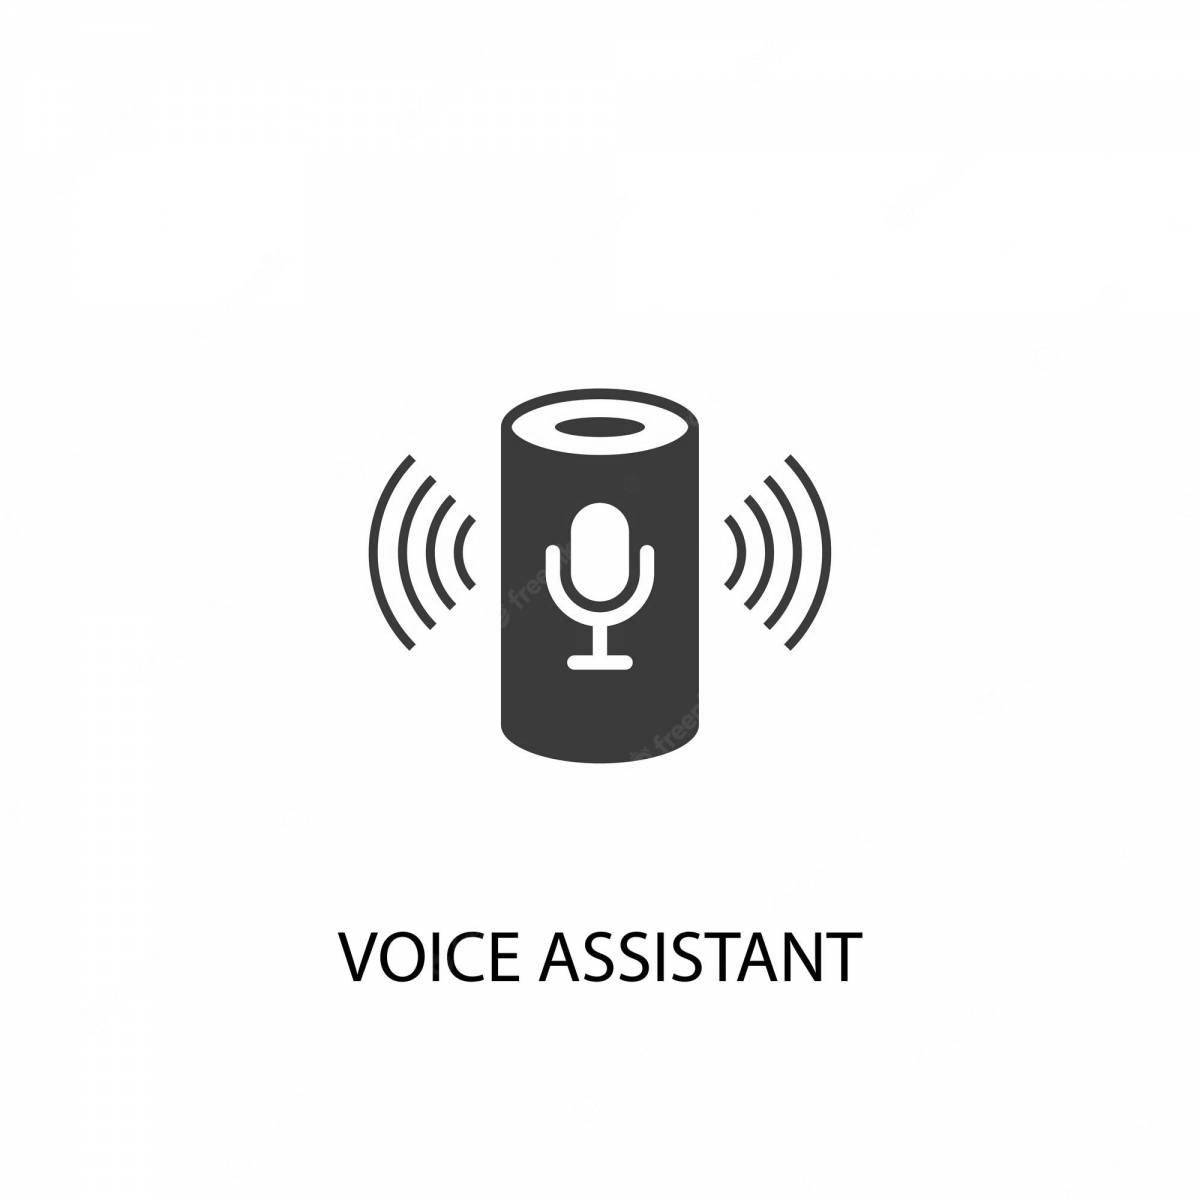 Voice assistant #2